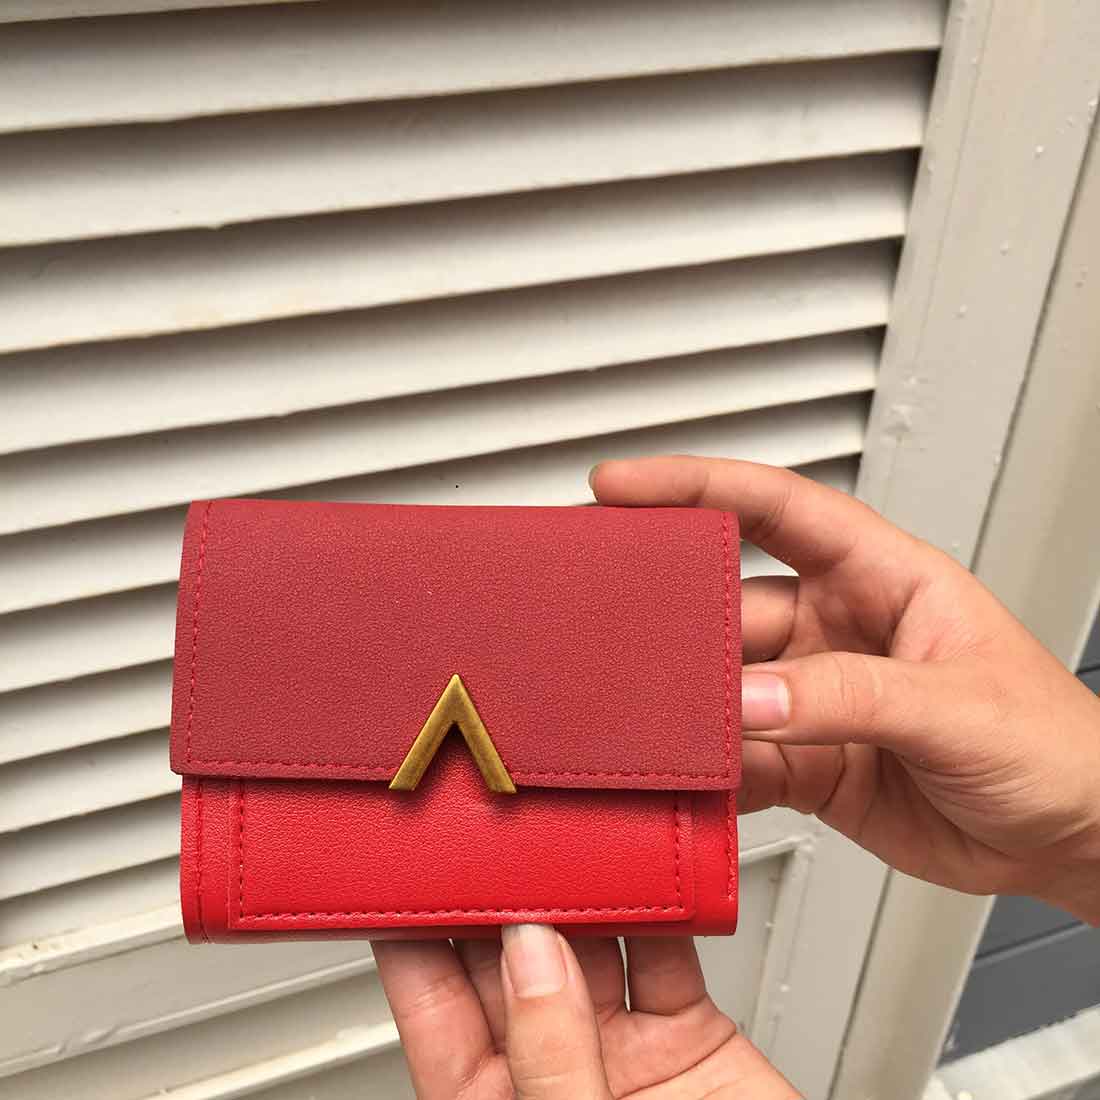 Women's Bi-Fold Wallet | Portland Leather Goods